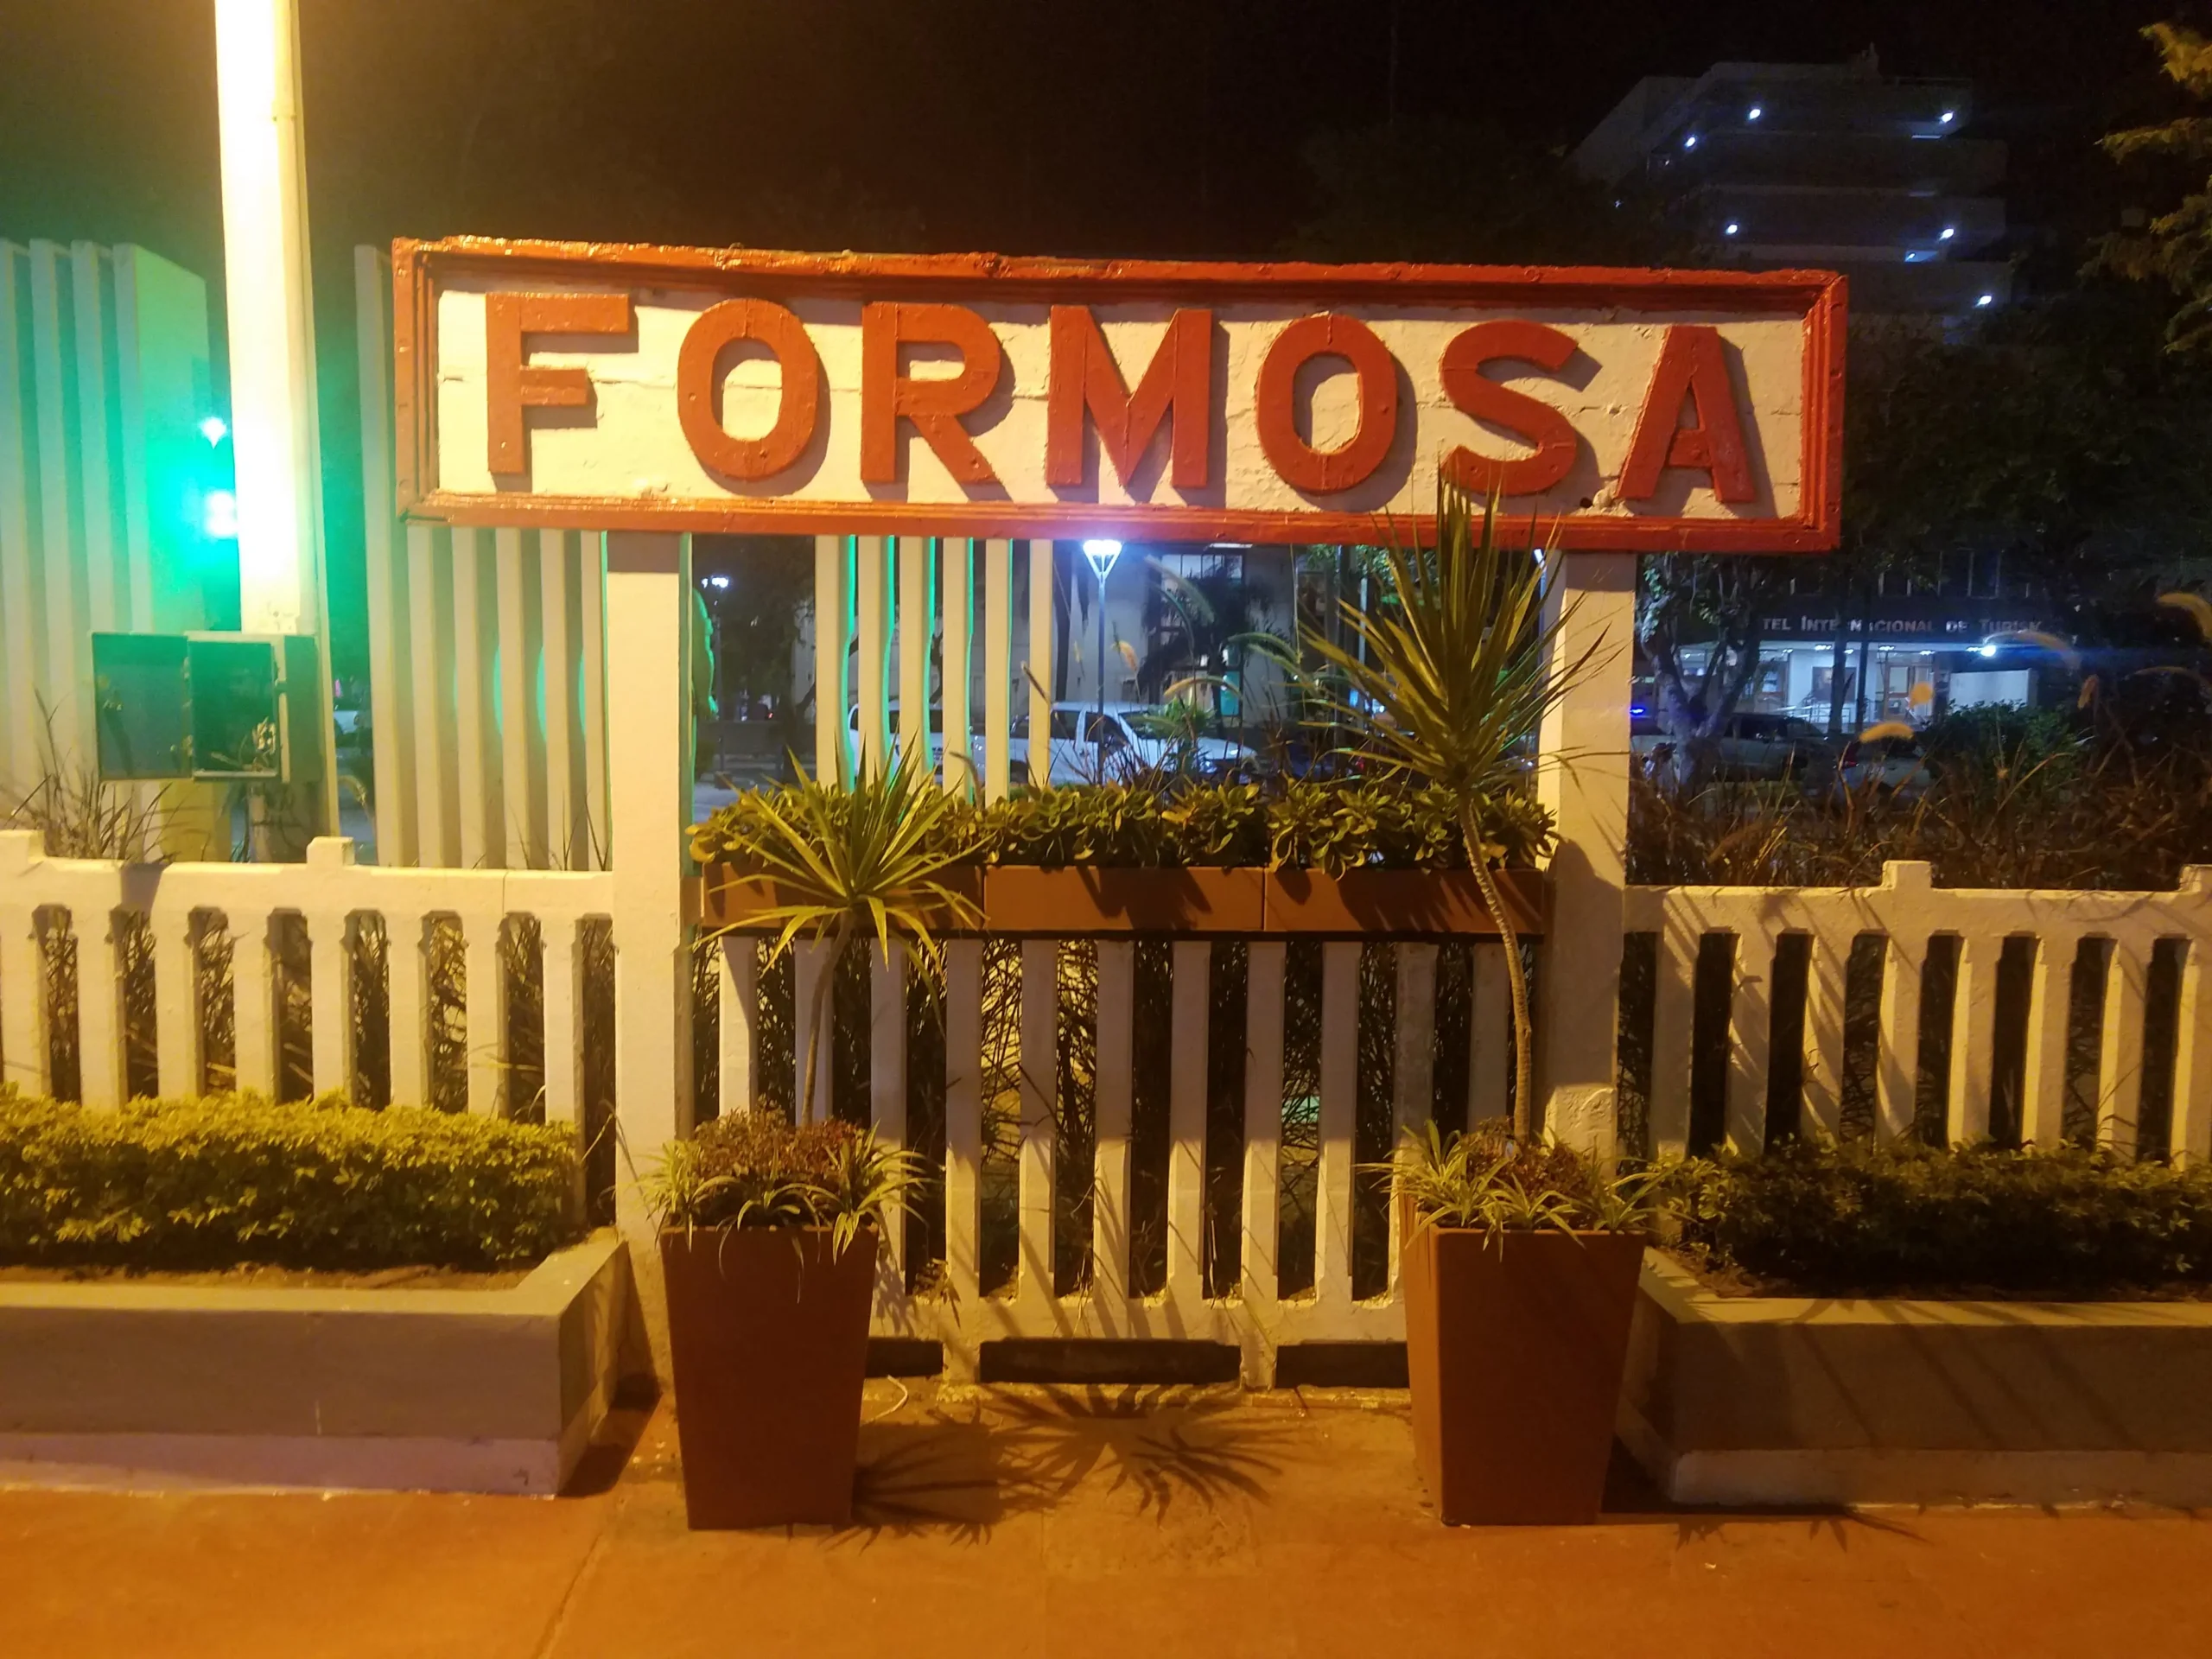 estacion de ferrocarril formosa - Qué significa la palabra Formosa